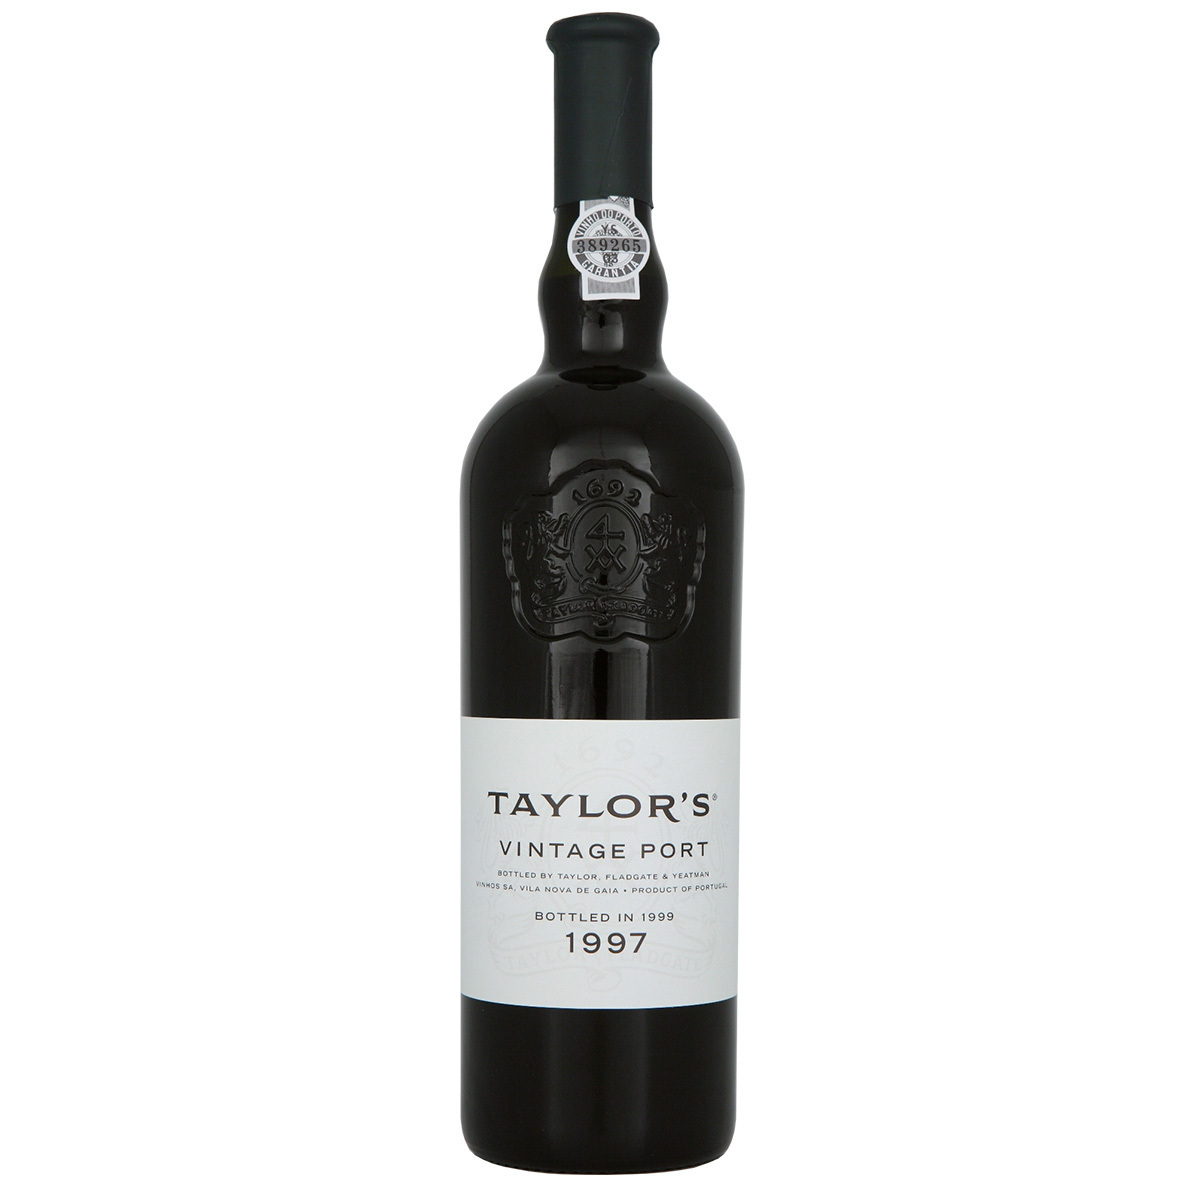 Taylors 1997 Vintage Port, 75cl